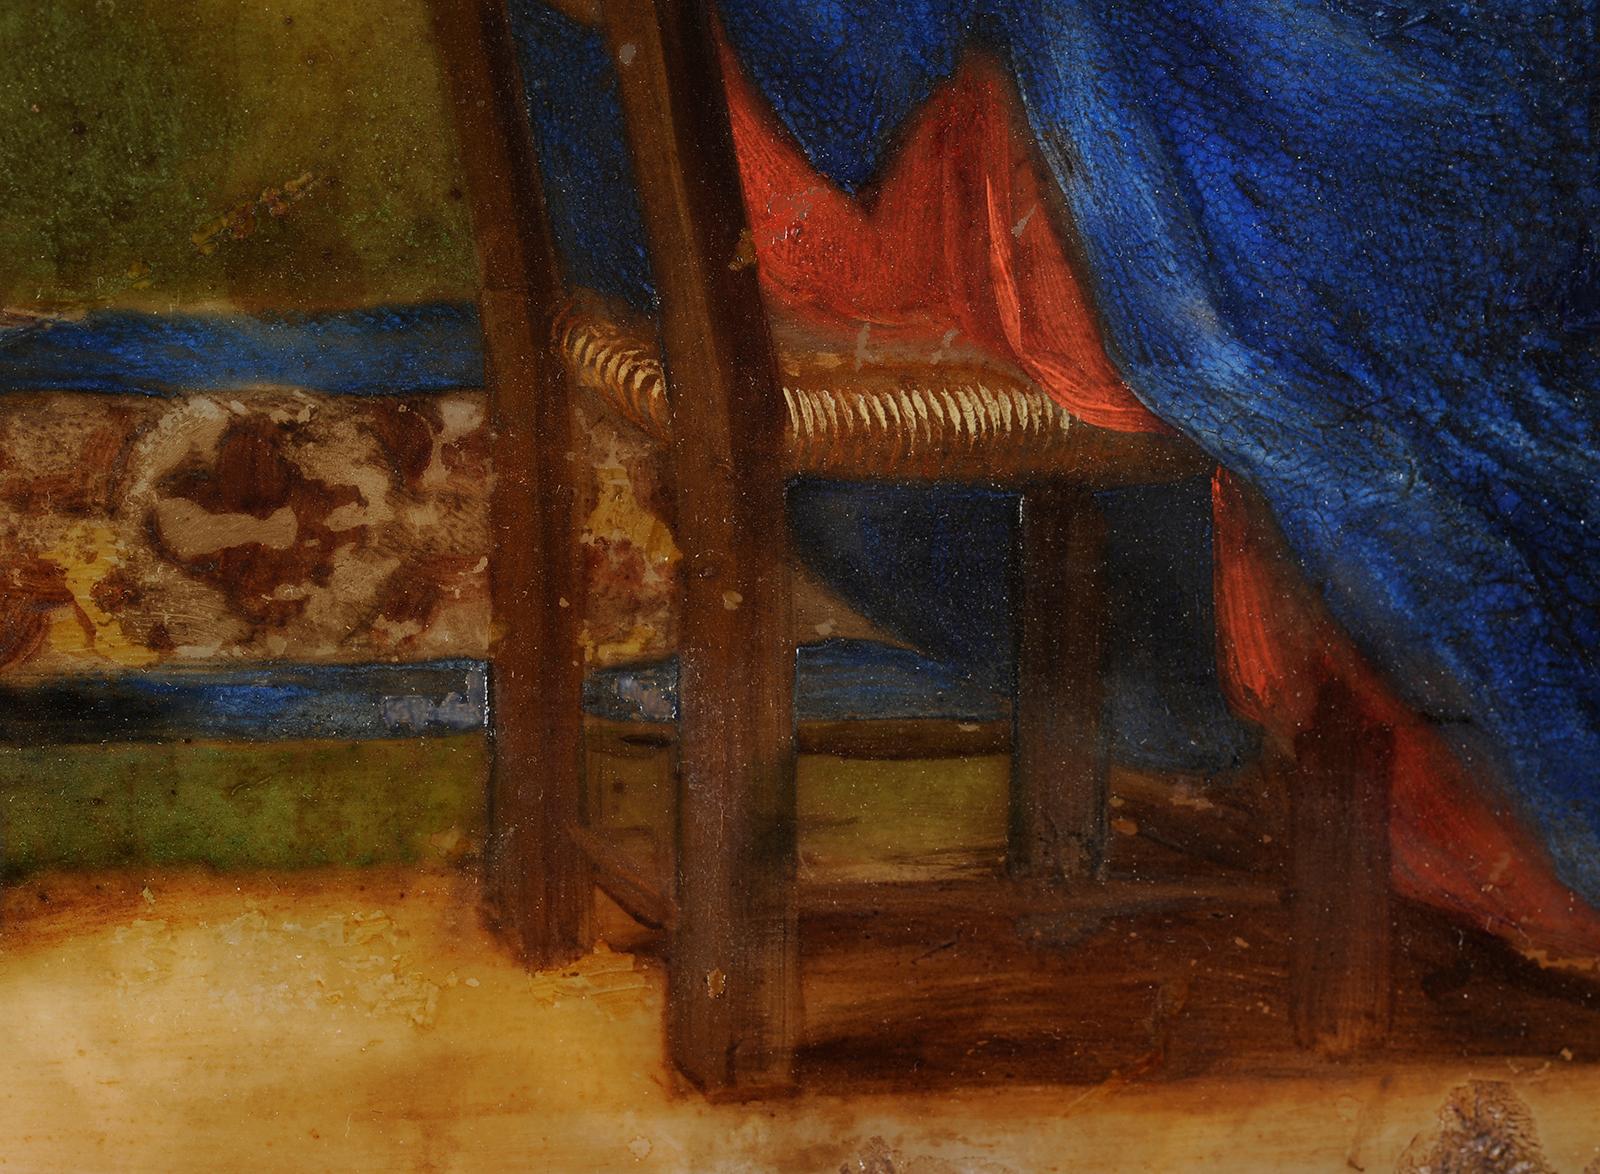 Jacques STELLA
(Lyon, 1596 - Paris, 1657)
Die Verkündigung
Öl auf Alabaster (einzelner alter Bruch perfekt restauriert)
H. 25 cm; B. 30 cm

Jacques Stella wurde 1596 in Lyon als Sohn des flämischen Malers François Stellaert geboren, der 1576 nach